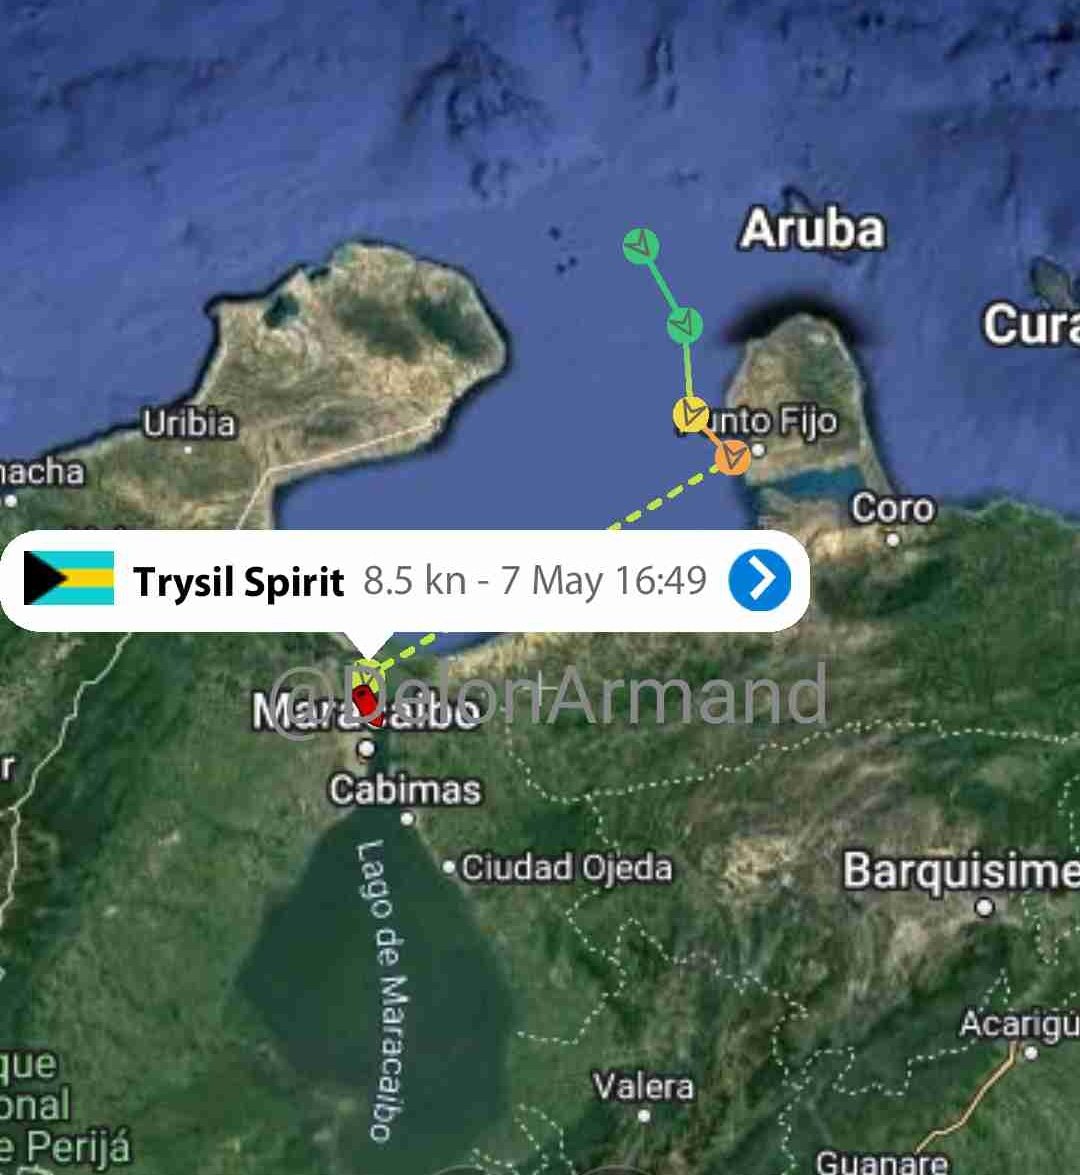 Trysil Spirit (Chevron) arribando a Bajo Grande, Venezuela desde Port Arthur, U.S 

A todo vapor la petrolera cobrando su deuda al régimen izquierdista antes que cierto desquiciado de la dictadura se le ocurra ordenar no seguir despachando crudo a la petrolera 
#crudo #oil #7Mayo